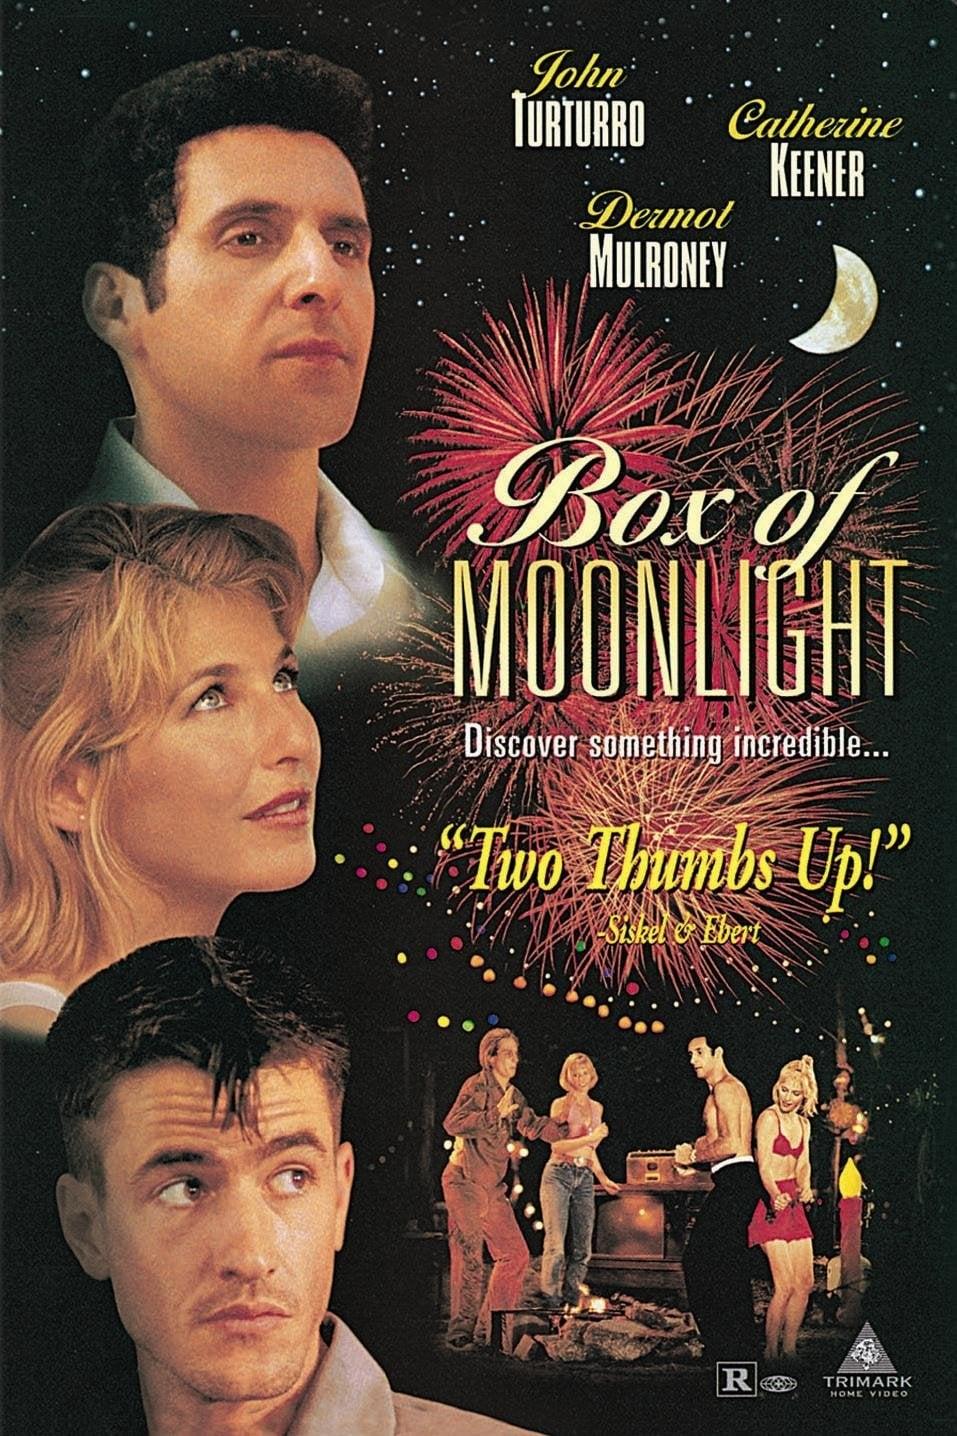 Box of Moonlight poster